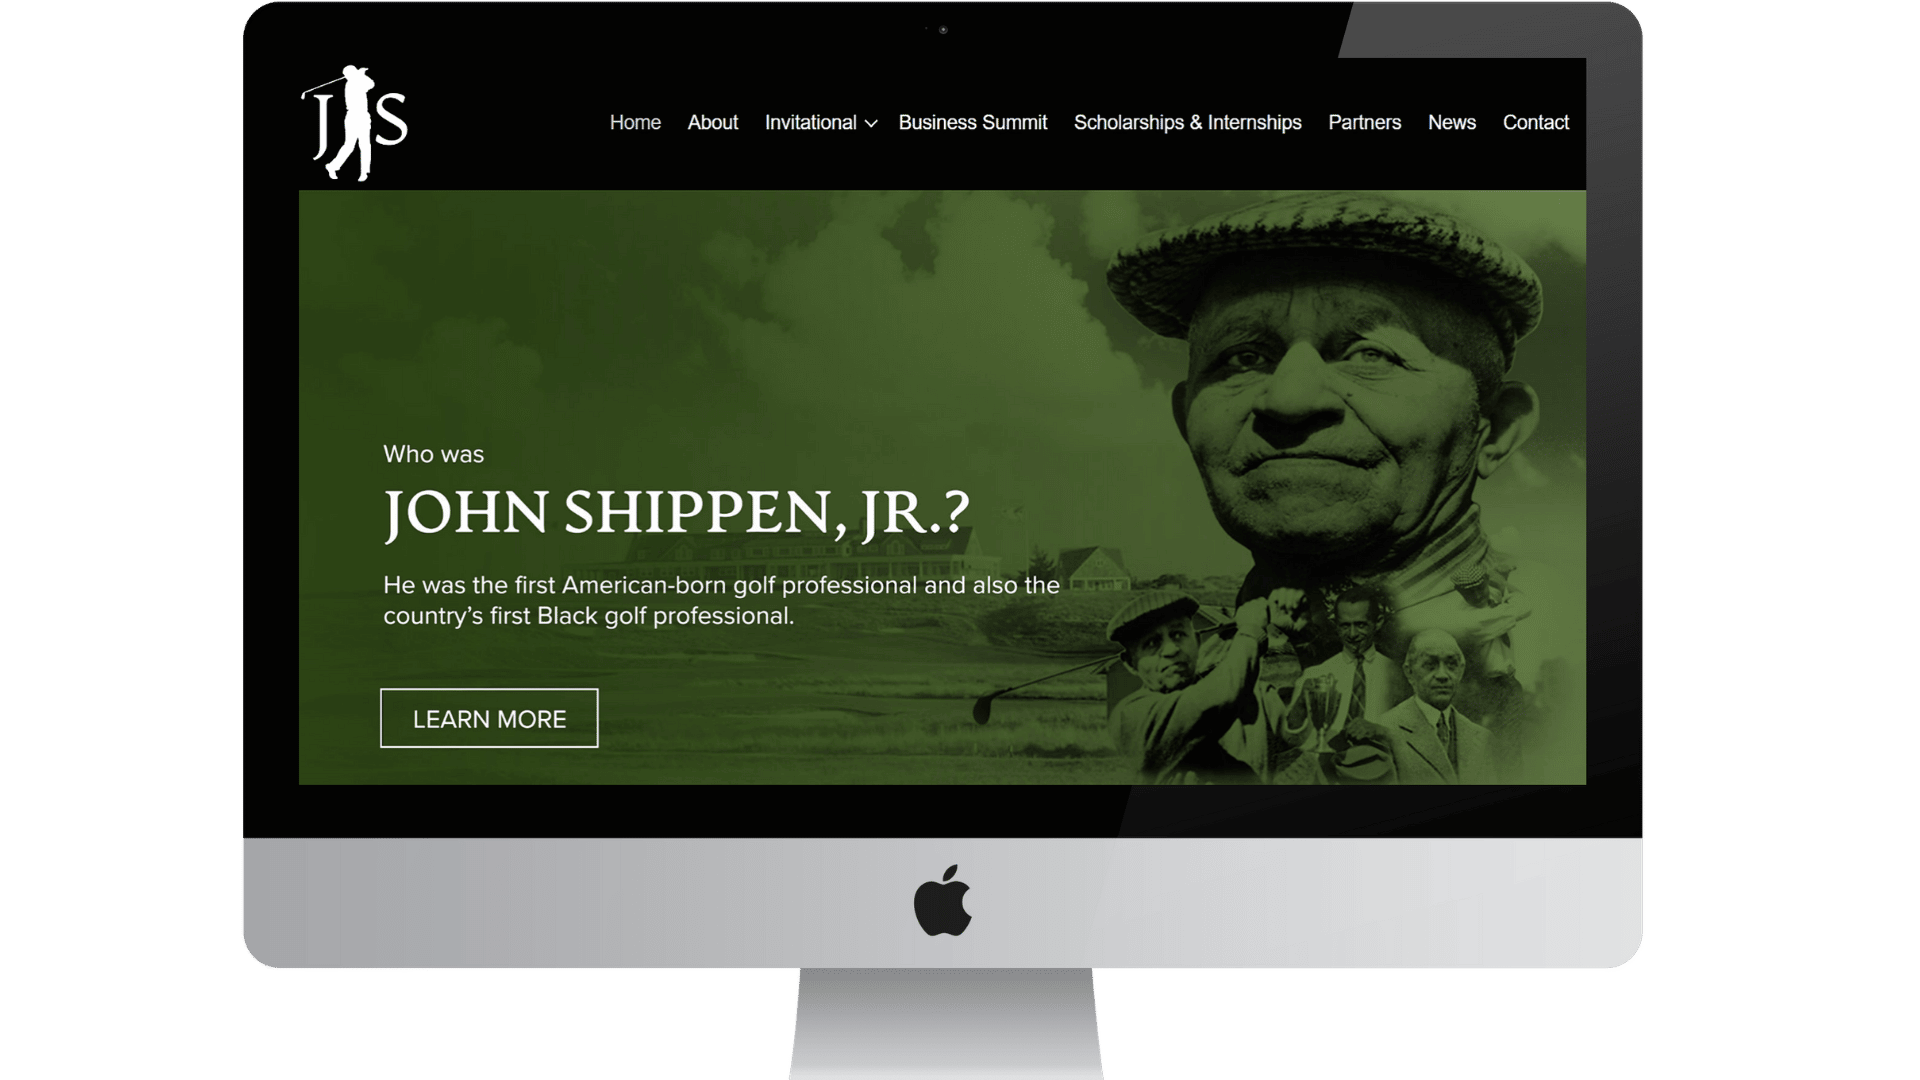 The John Shippen